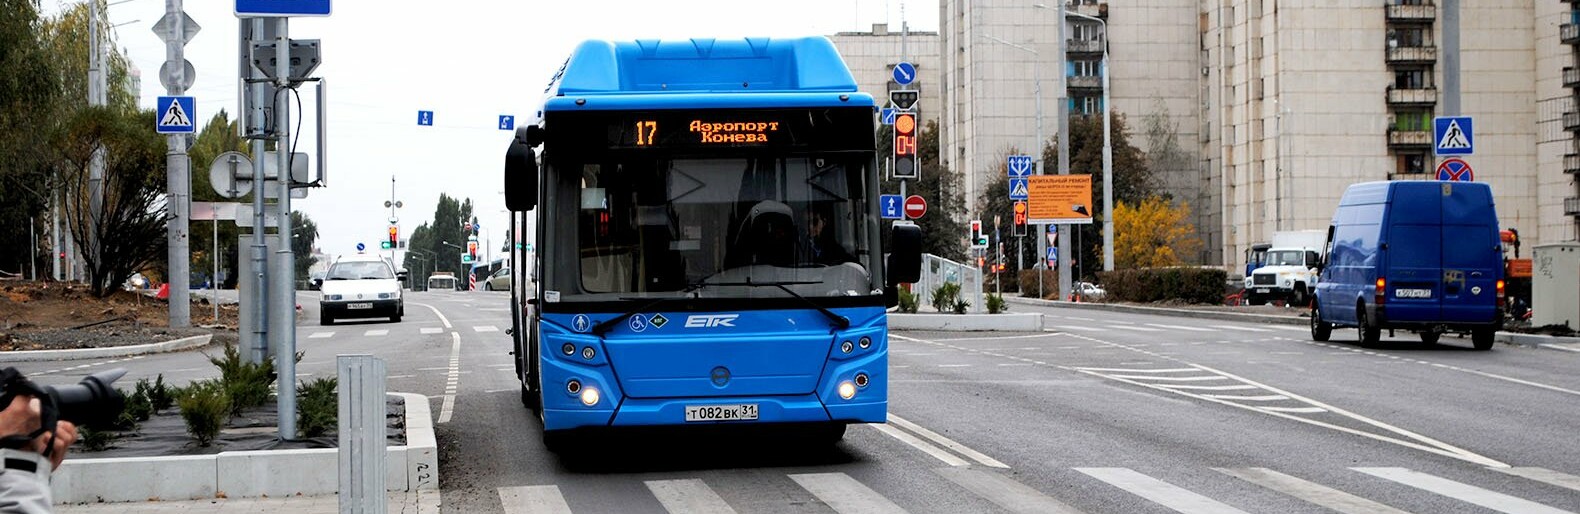 На «Грильфест» в Белгороде можно будет доехать на бесплатном автобусе